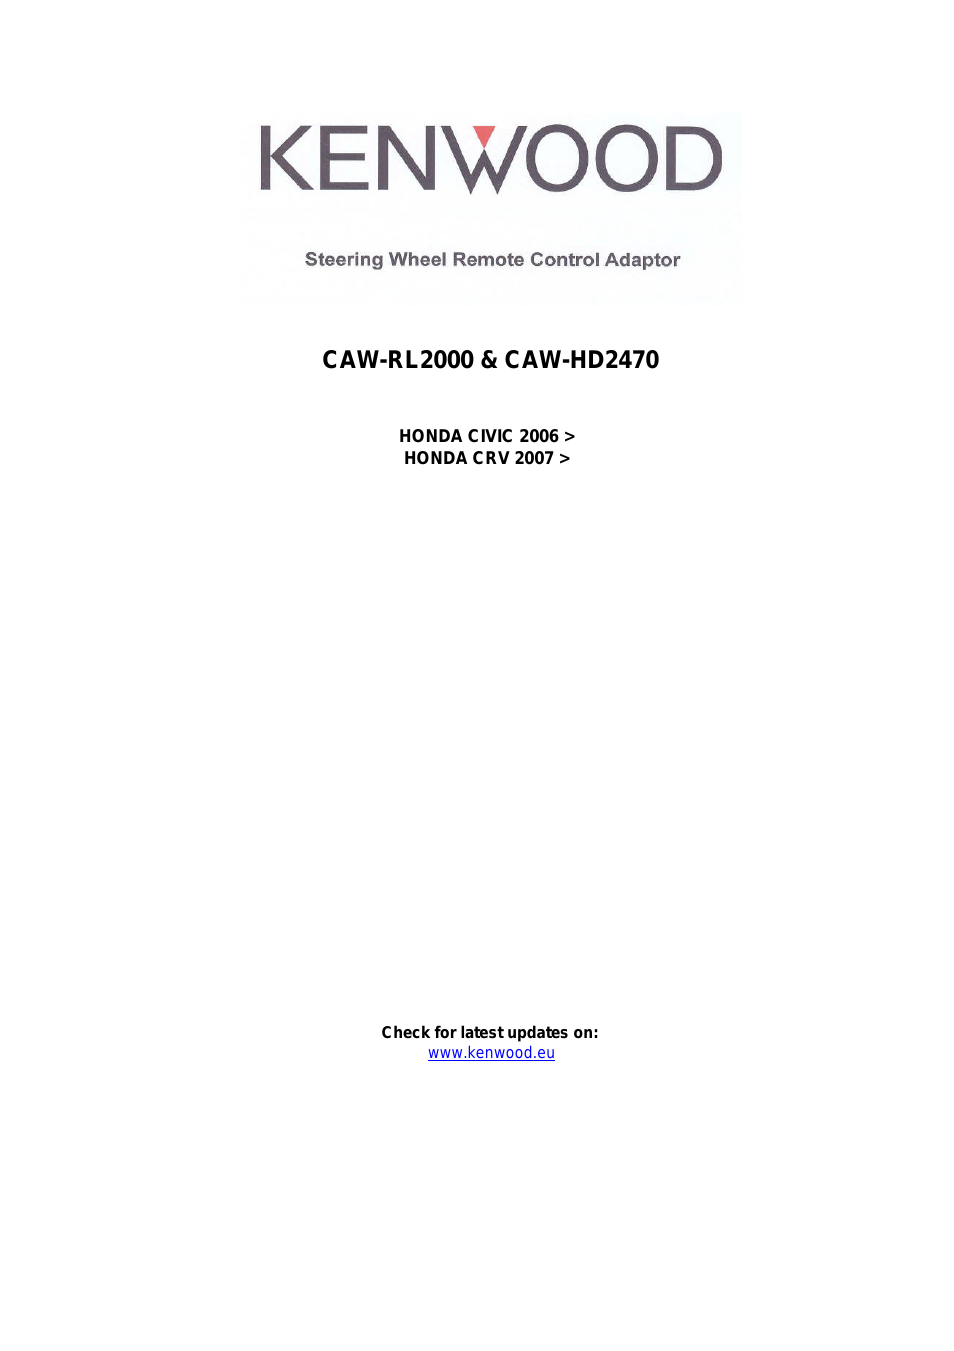 CAW-HD2470